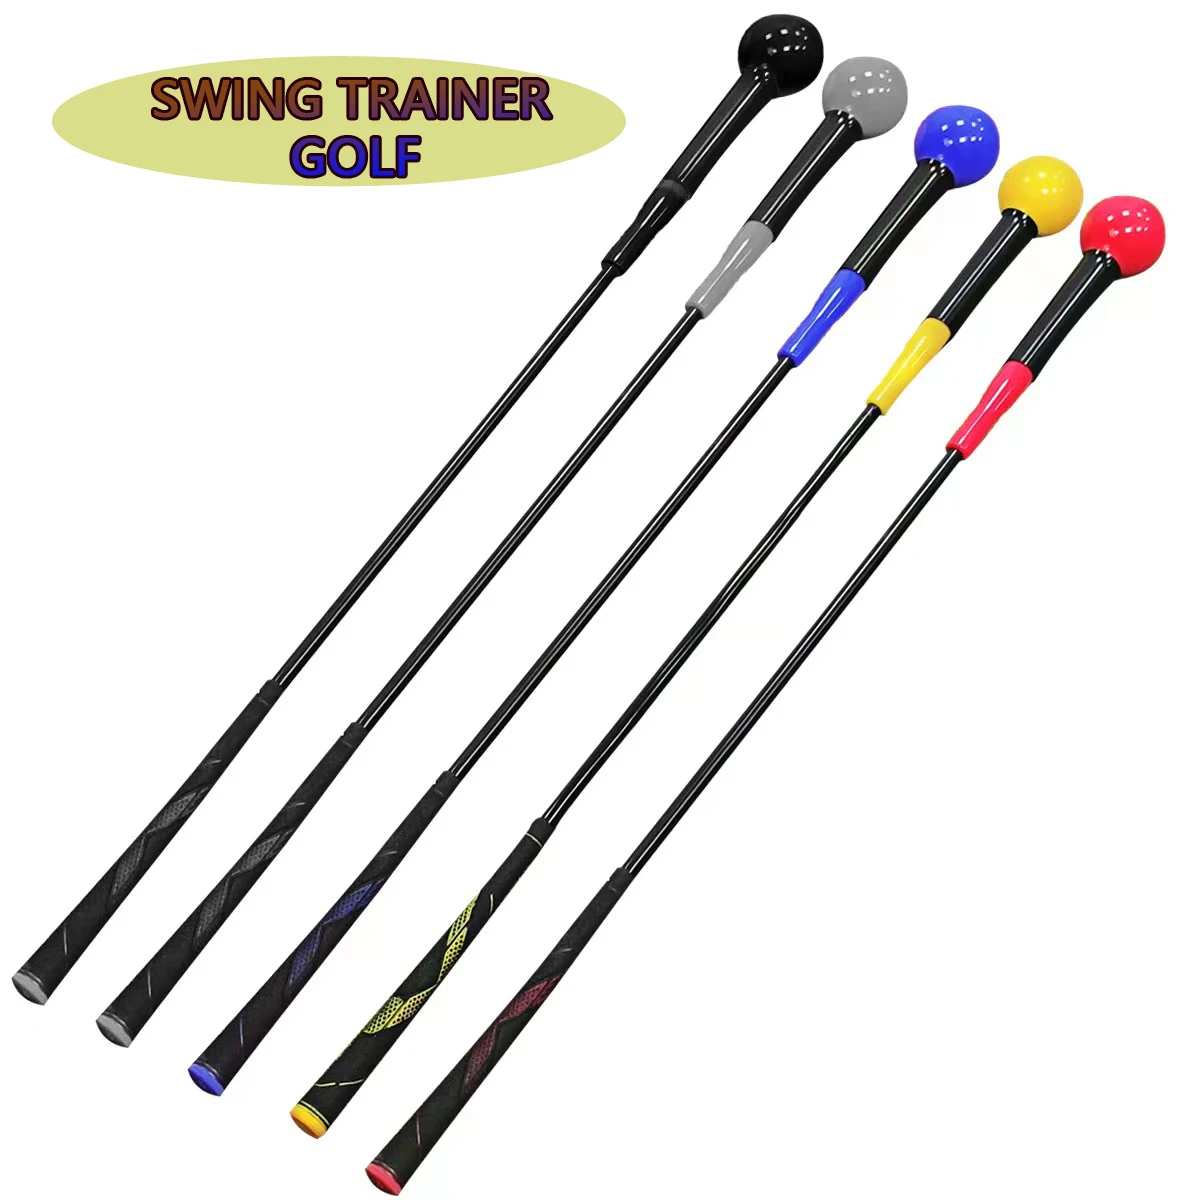 swing-golf-training-aids-golf-warm-up-vara-de-praticas-de-golfe-vara-para-adultos-iniciantes-golfe-instrutor-do-balanco-do-golfe-1pc